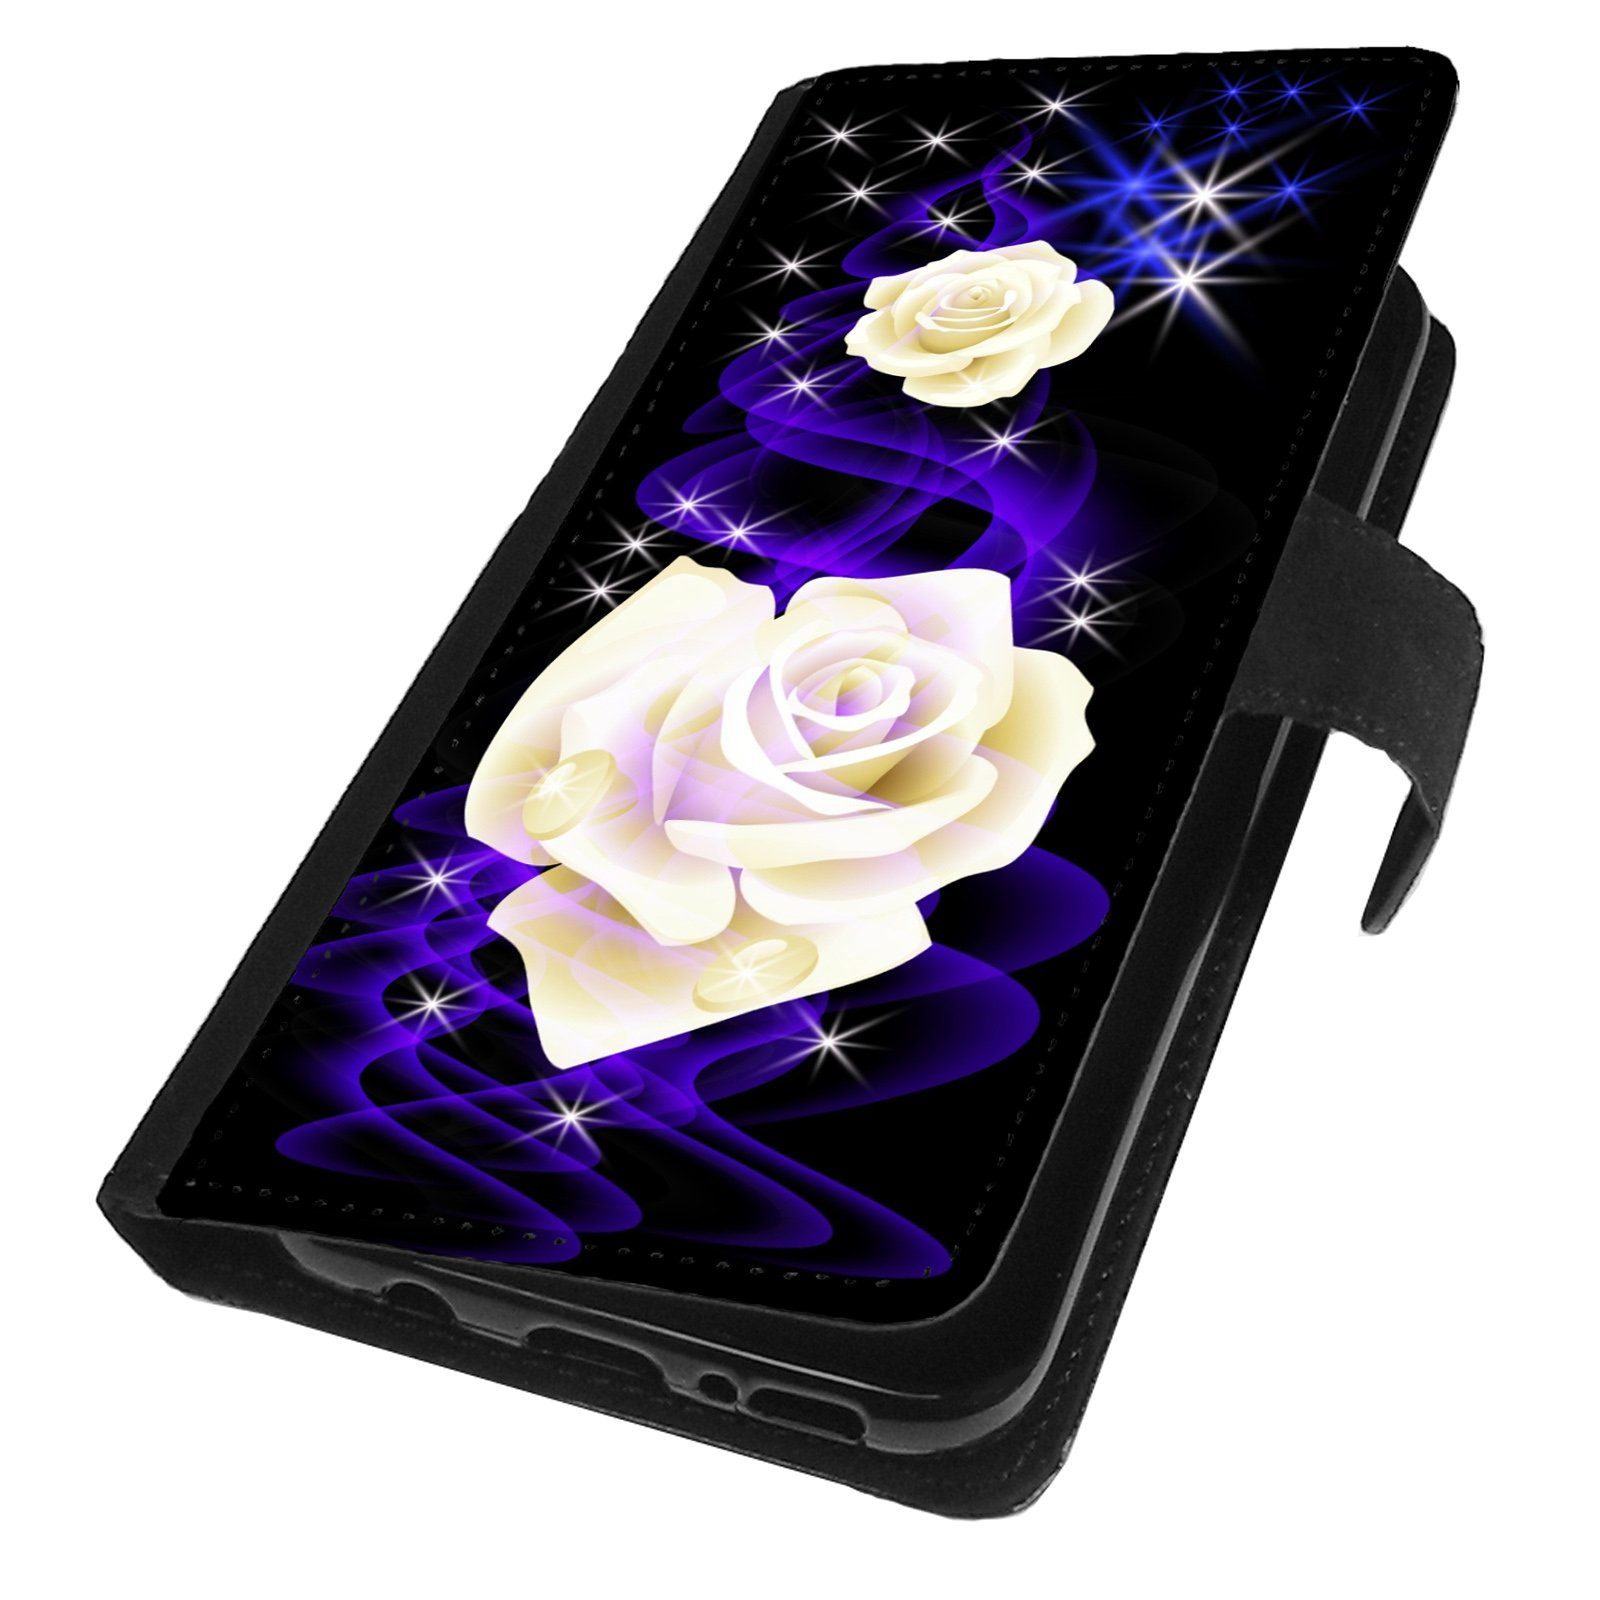 Traumhuelle Handyhülle MOTIV 298 weiße Rose Hülle für iPhone Xiaomi Google Huawei Motorola, Handy Tasche Schutz Etui Flip Case Klapp Hülle Cover Silikon